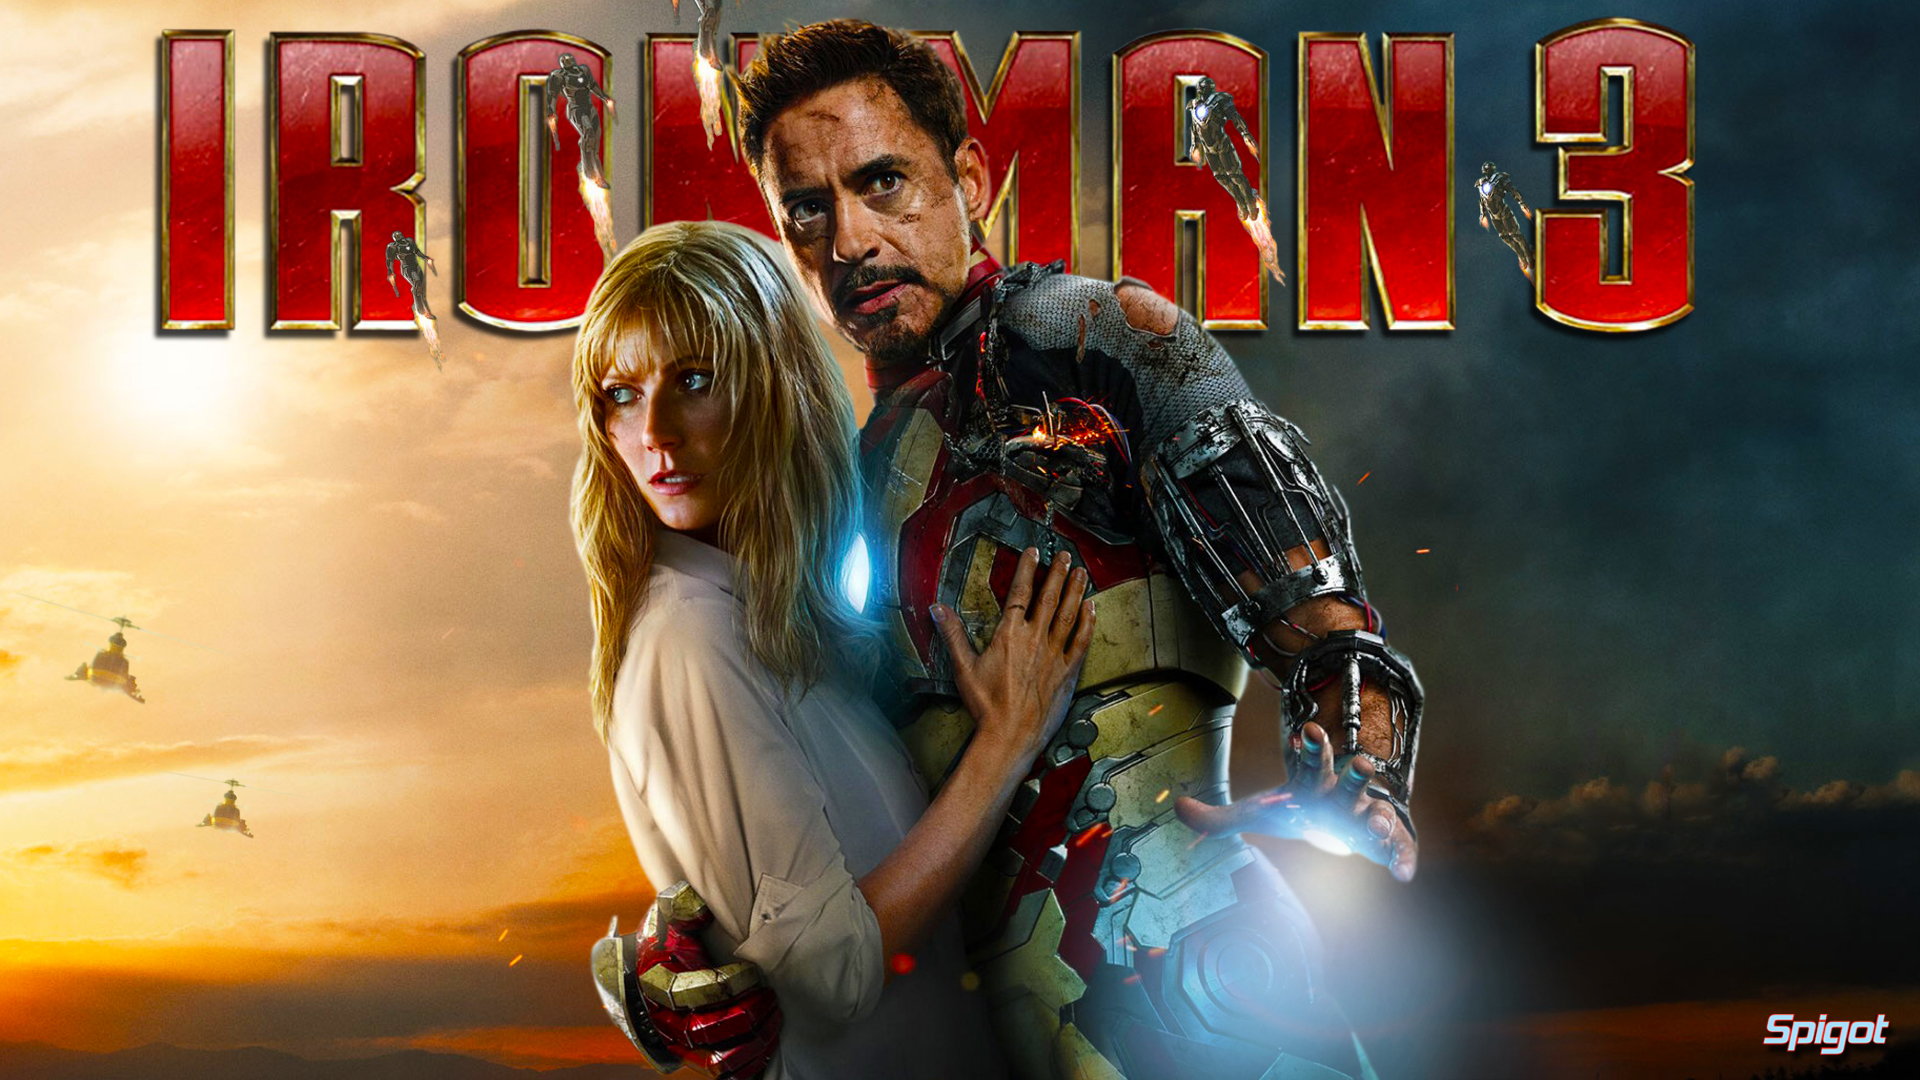 Iron-Man-3-Movie-Theme-Song-2